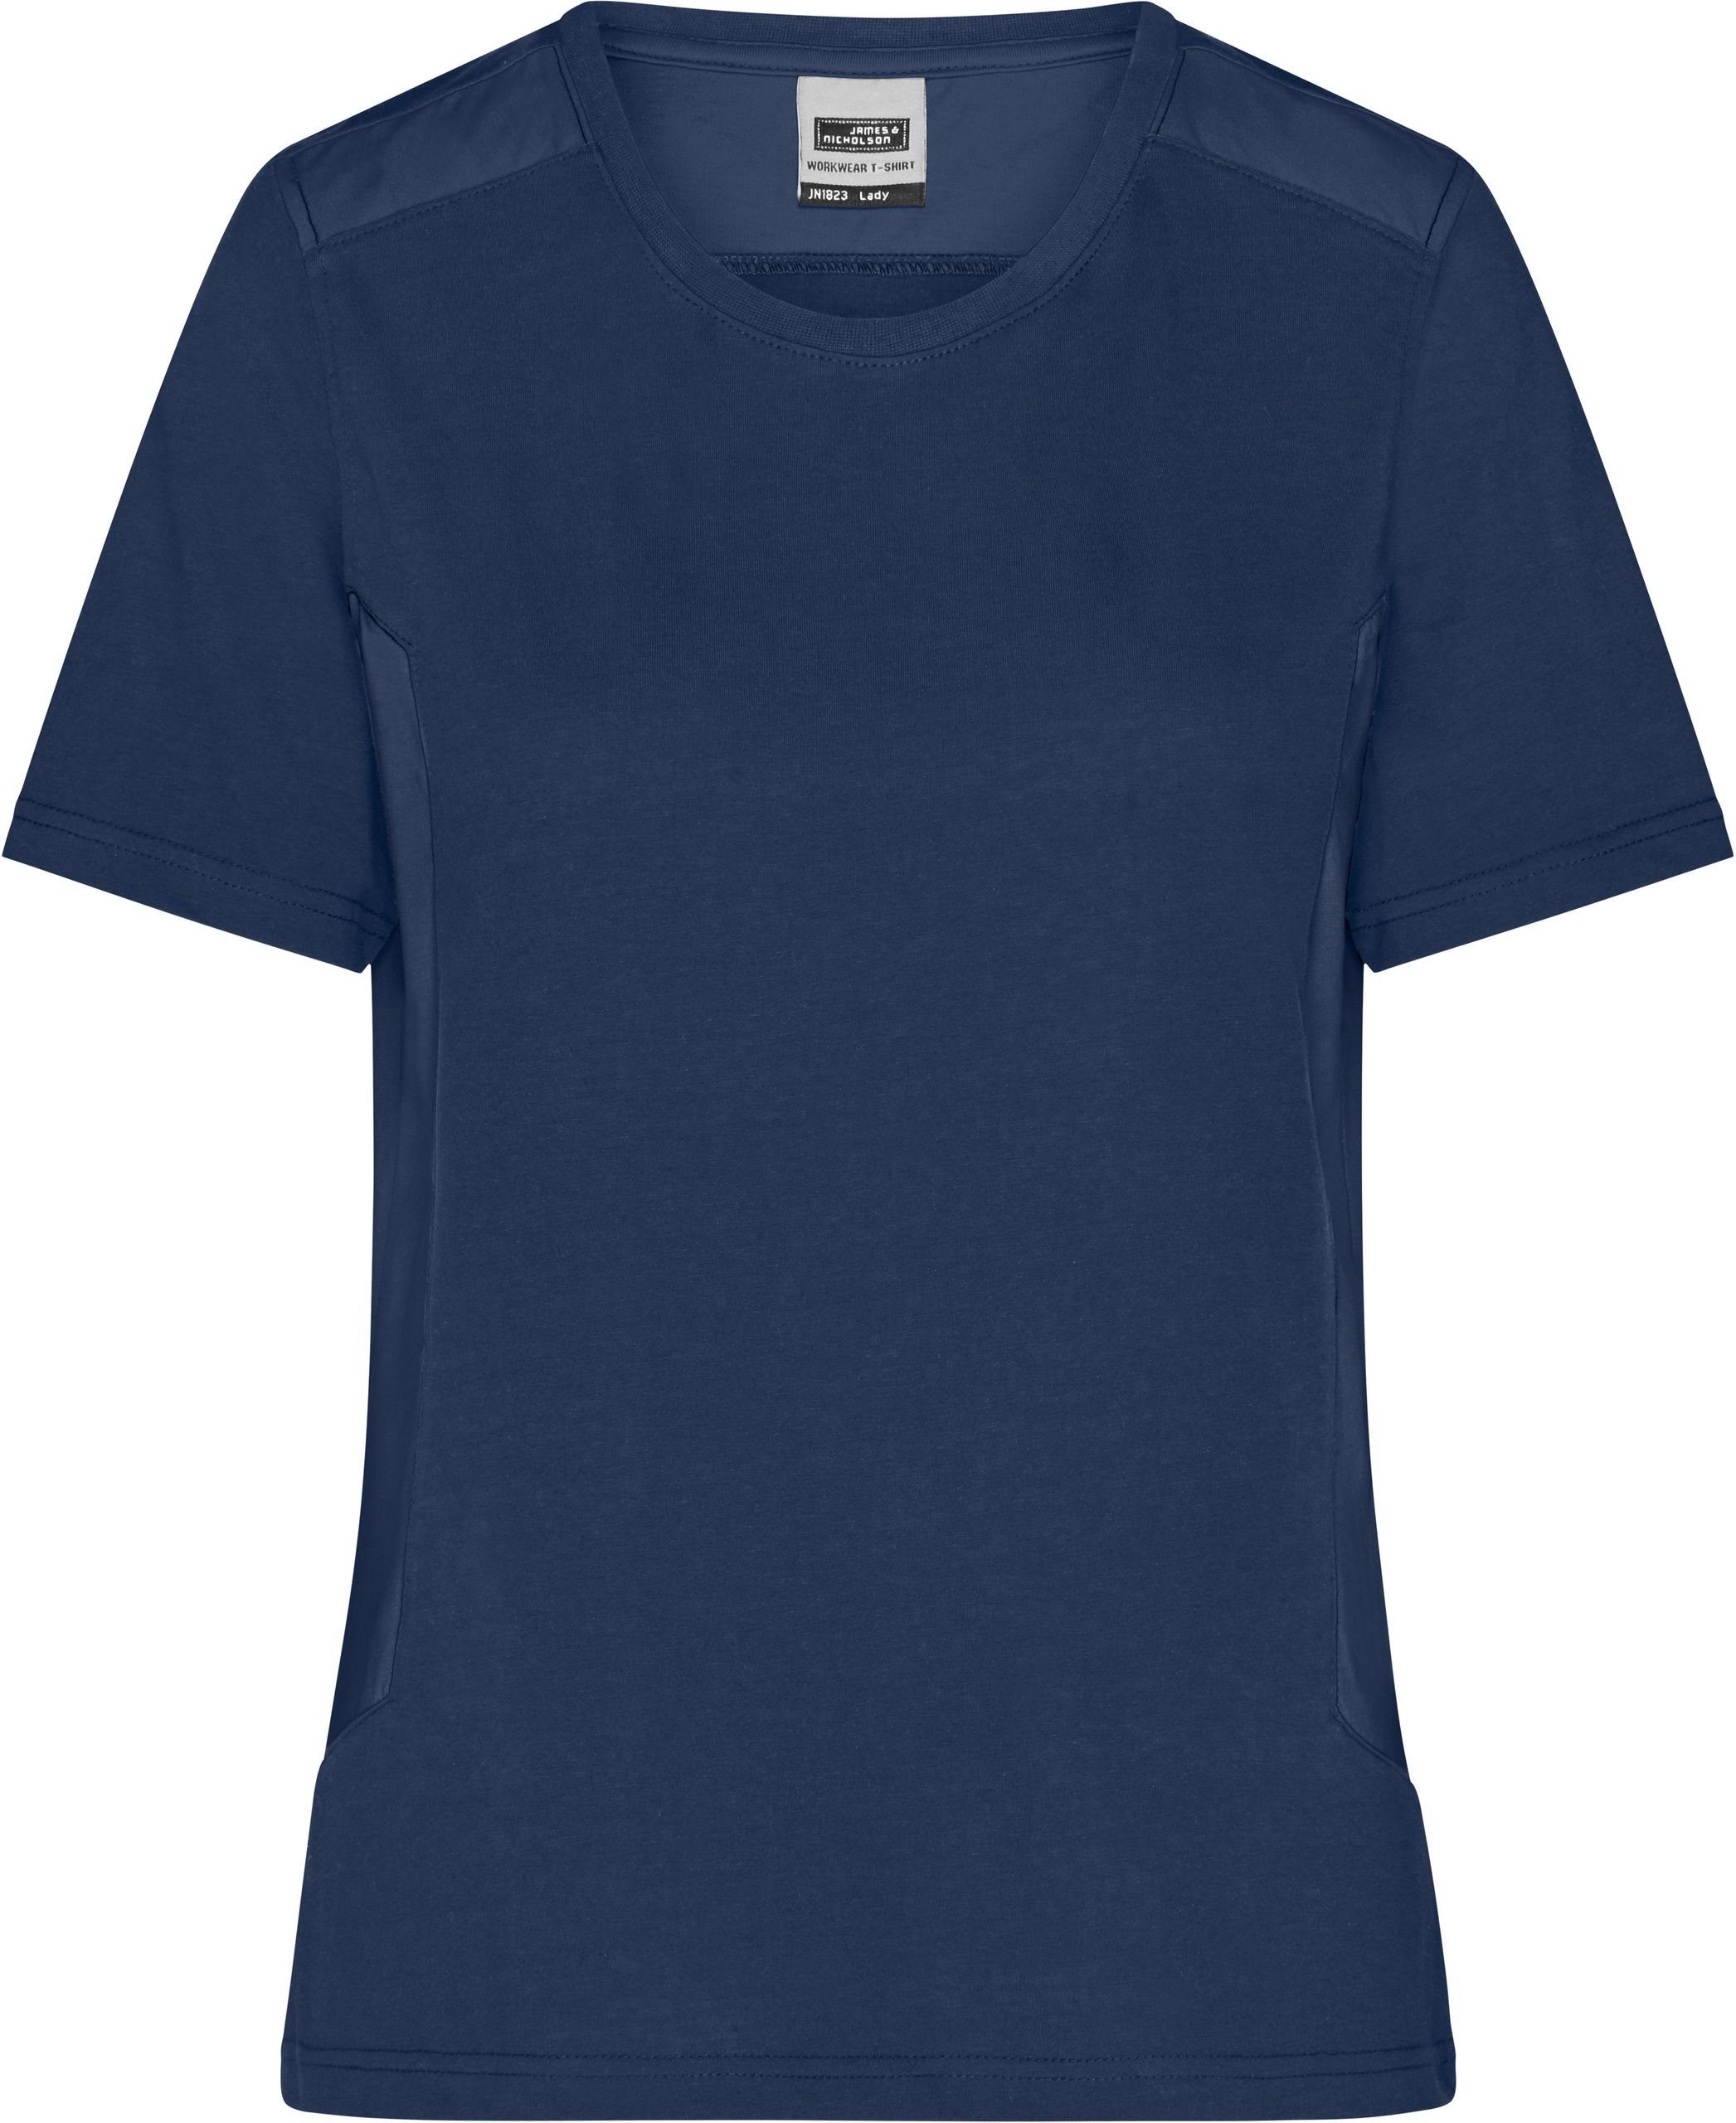 James & Nicholson T-Shirt Damen Workwear T-Shirt - Strong navy/navy